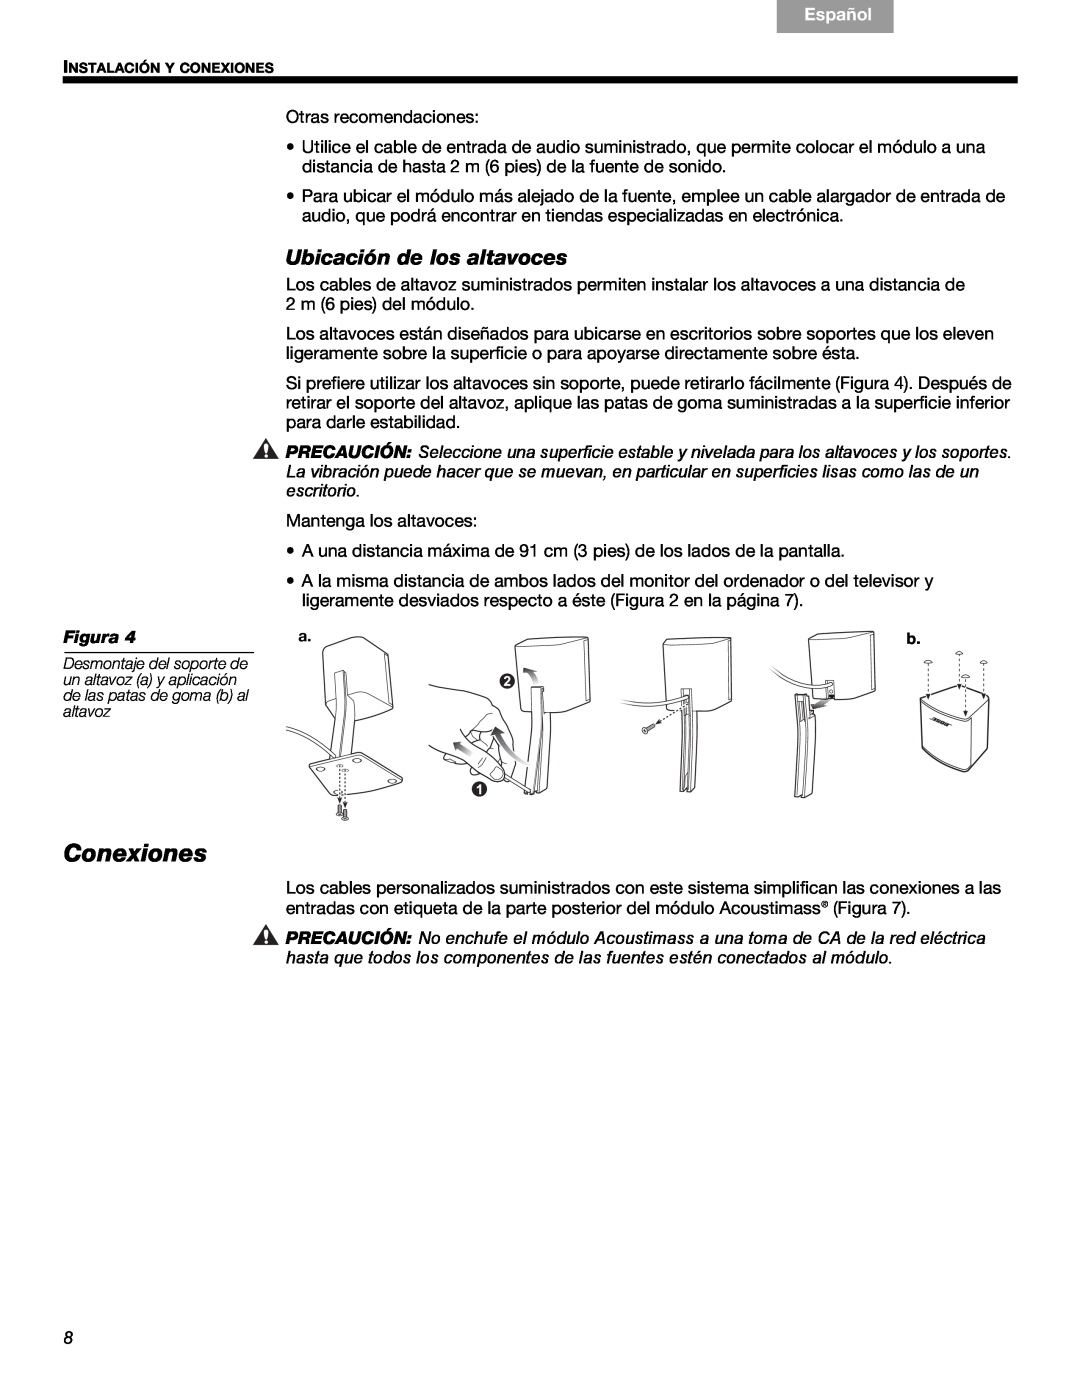 Bose 3 manual Conexiones, Ubicación de los altavoces, Français, Español, English, Figura 